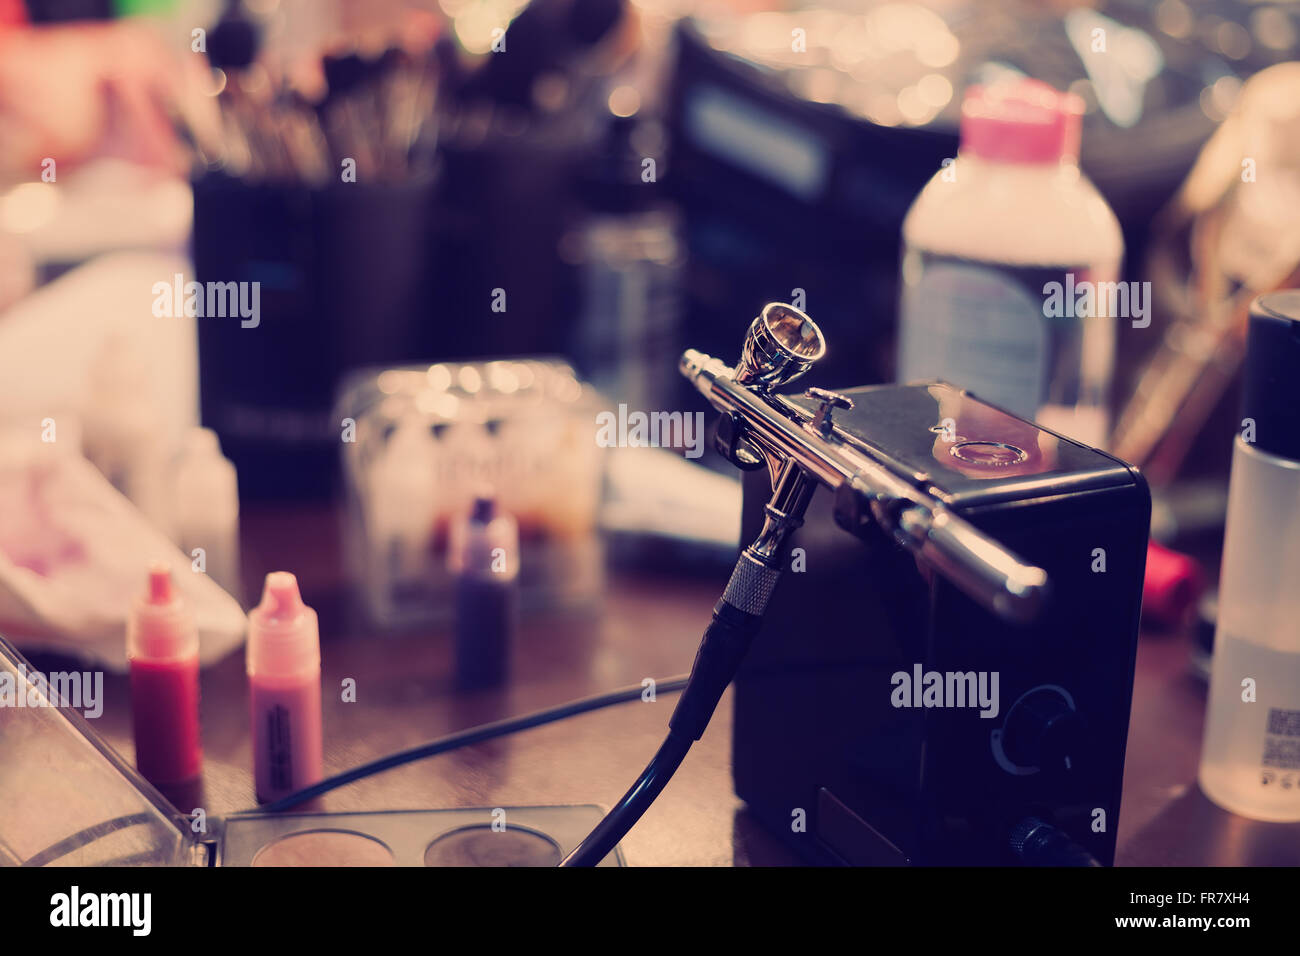 Airbrusher pour maquillage professionnel dans un studio debout sur une table de visagiste. Les cosmétiques et les pinceaux sur l'arrière-plan. Couleurs hipster moderne Banque D'Images